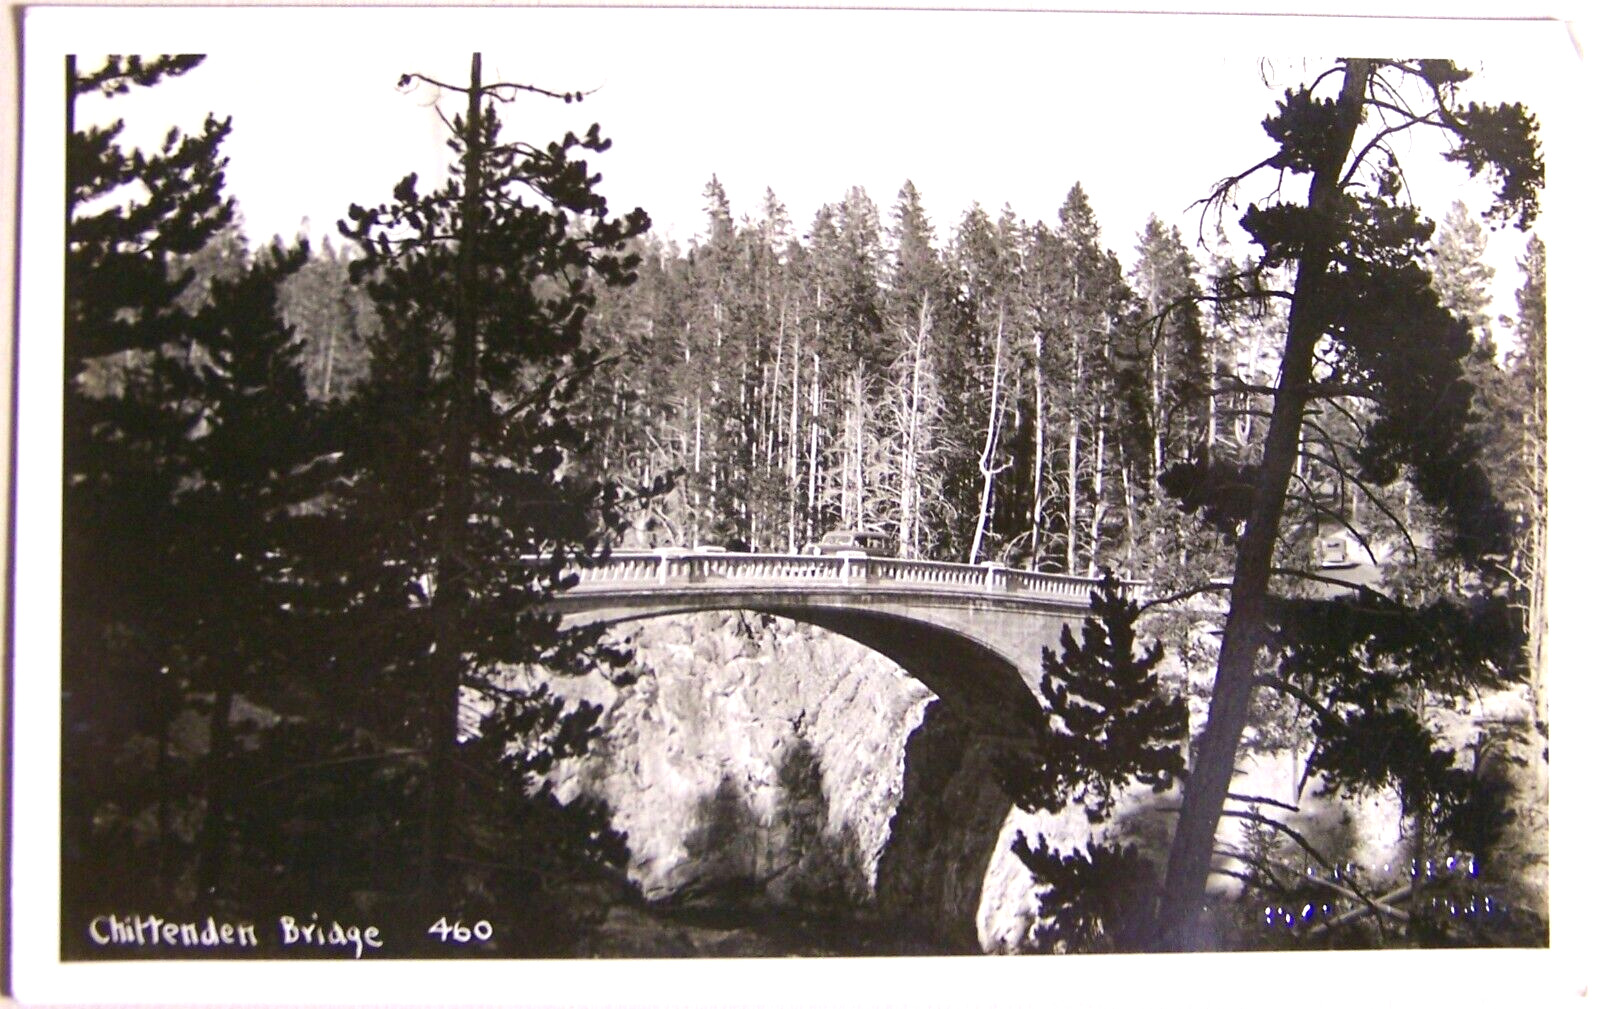 c. 1935, Chittenden Bridge, Yellowstone, Schlechten Studios, embossed stamp